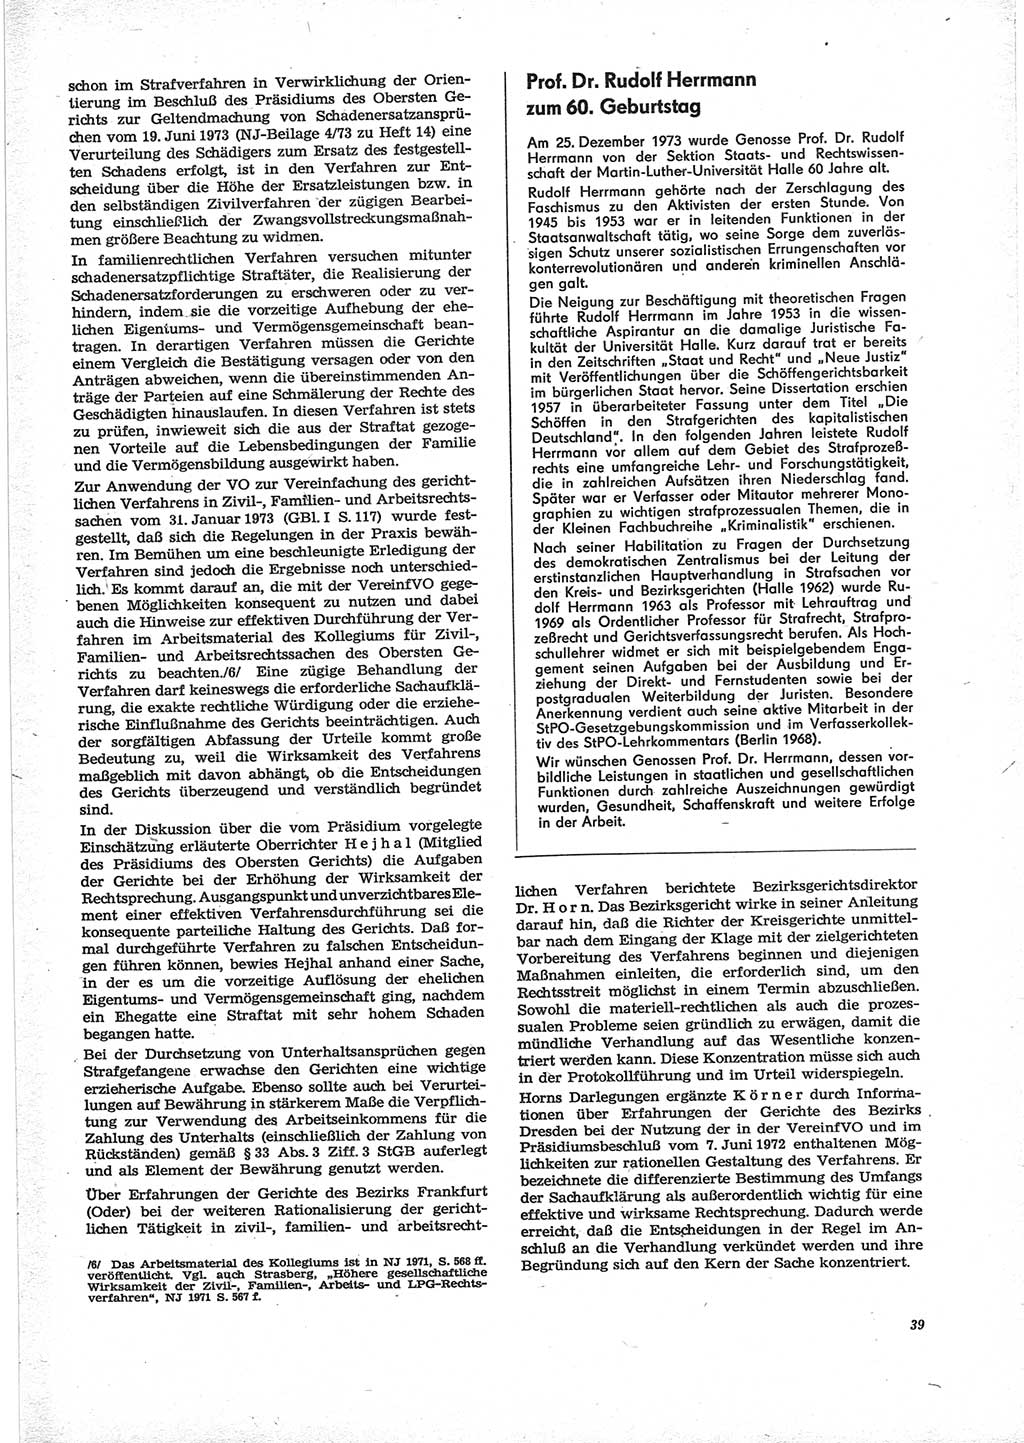 Neue Justiz (NJ), Zeitschrift für Recht und Rechtswissenschaft [Deutsche Demokratische Republik (DDR)], 28. Jahrgang 1974, Seite 39 (NJ DDR 1974, S. 39)